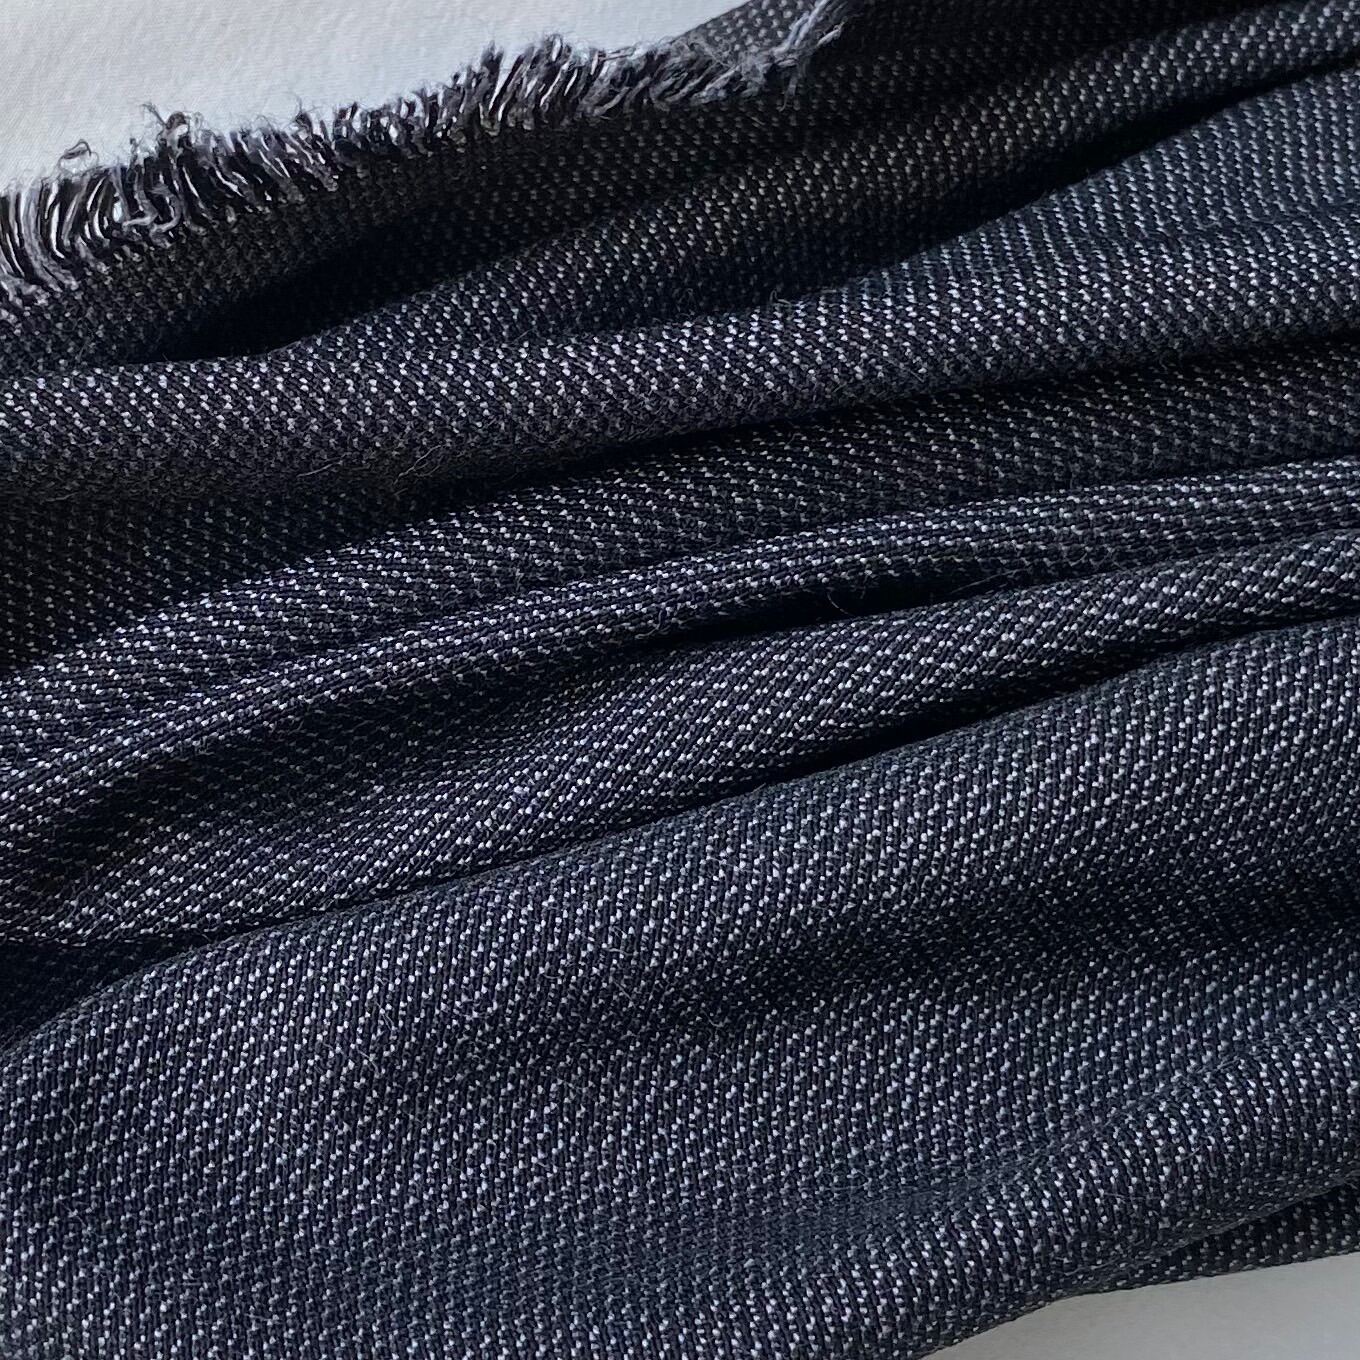 Vải kaki là gì Phân loại ưu nhược điểm và ứng dụng của vải kaki